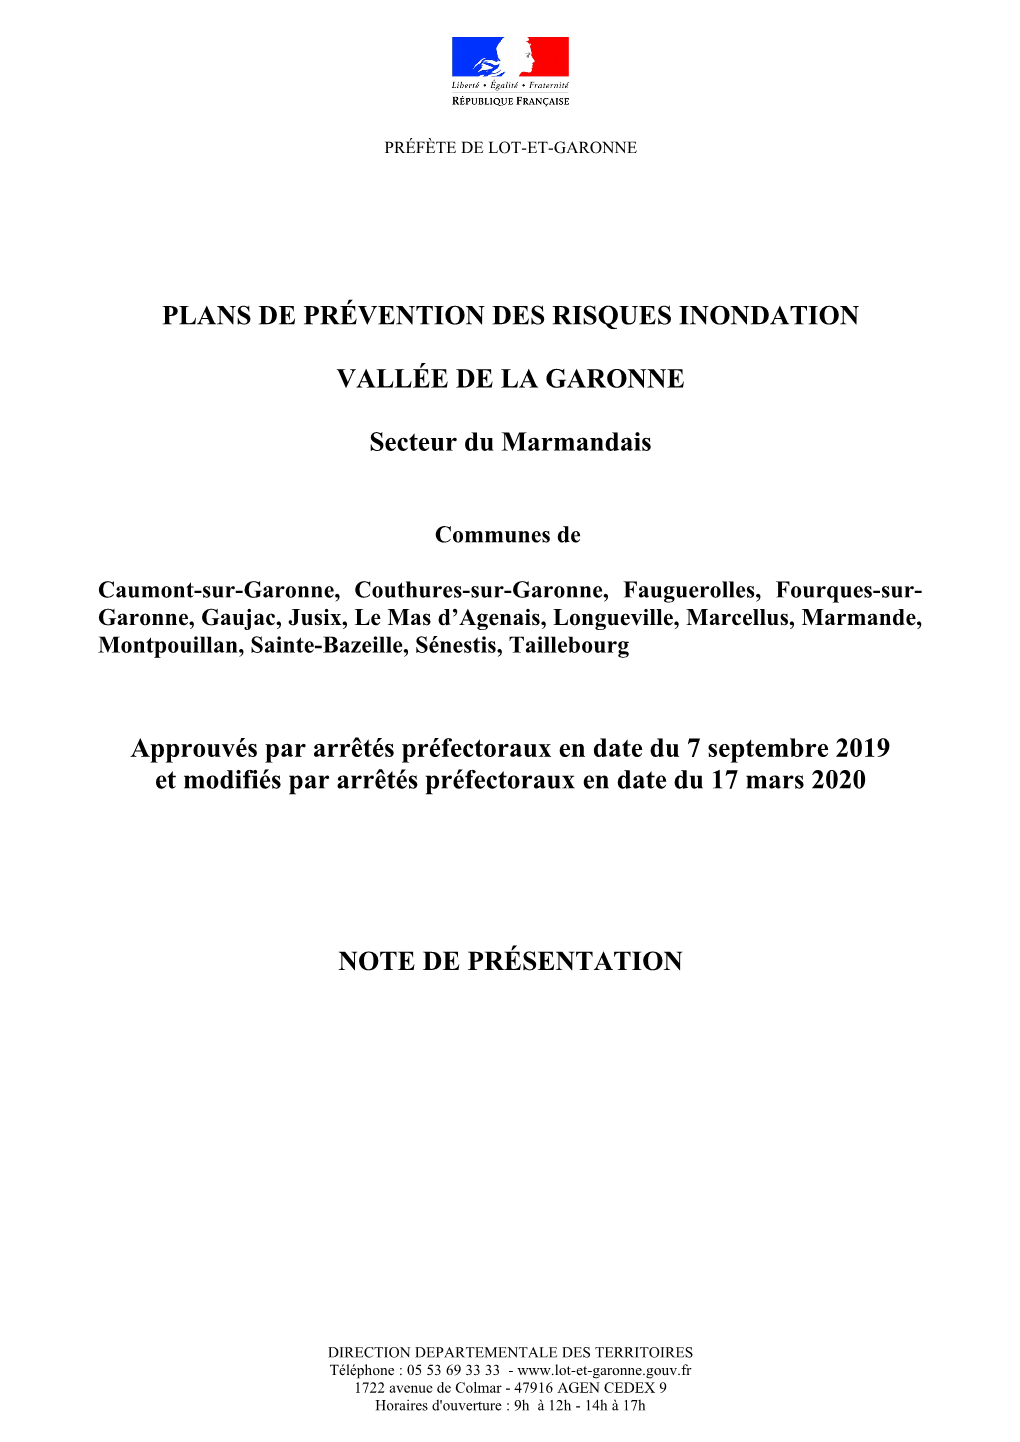 Plans De Prévention Des Risques Inondation Vallée